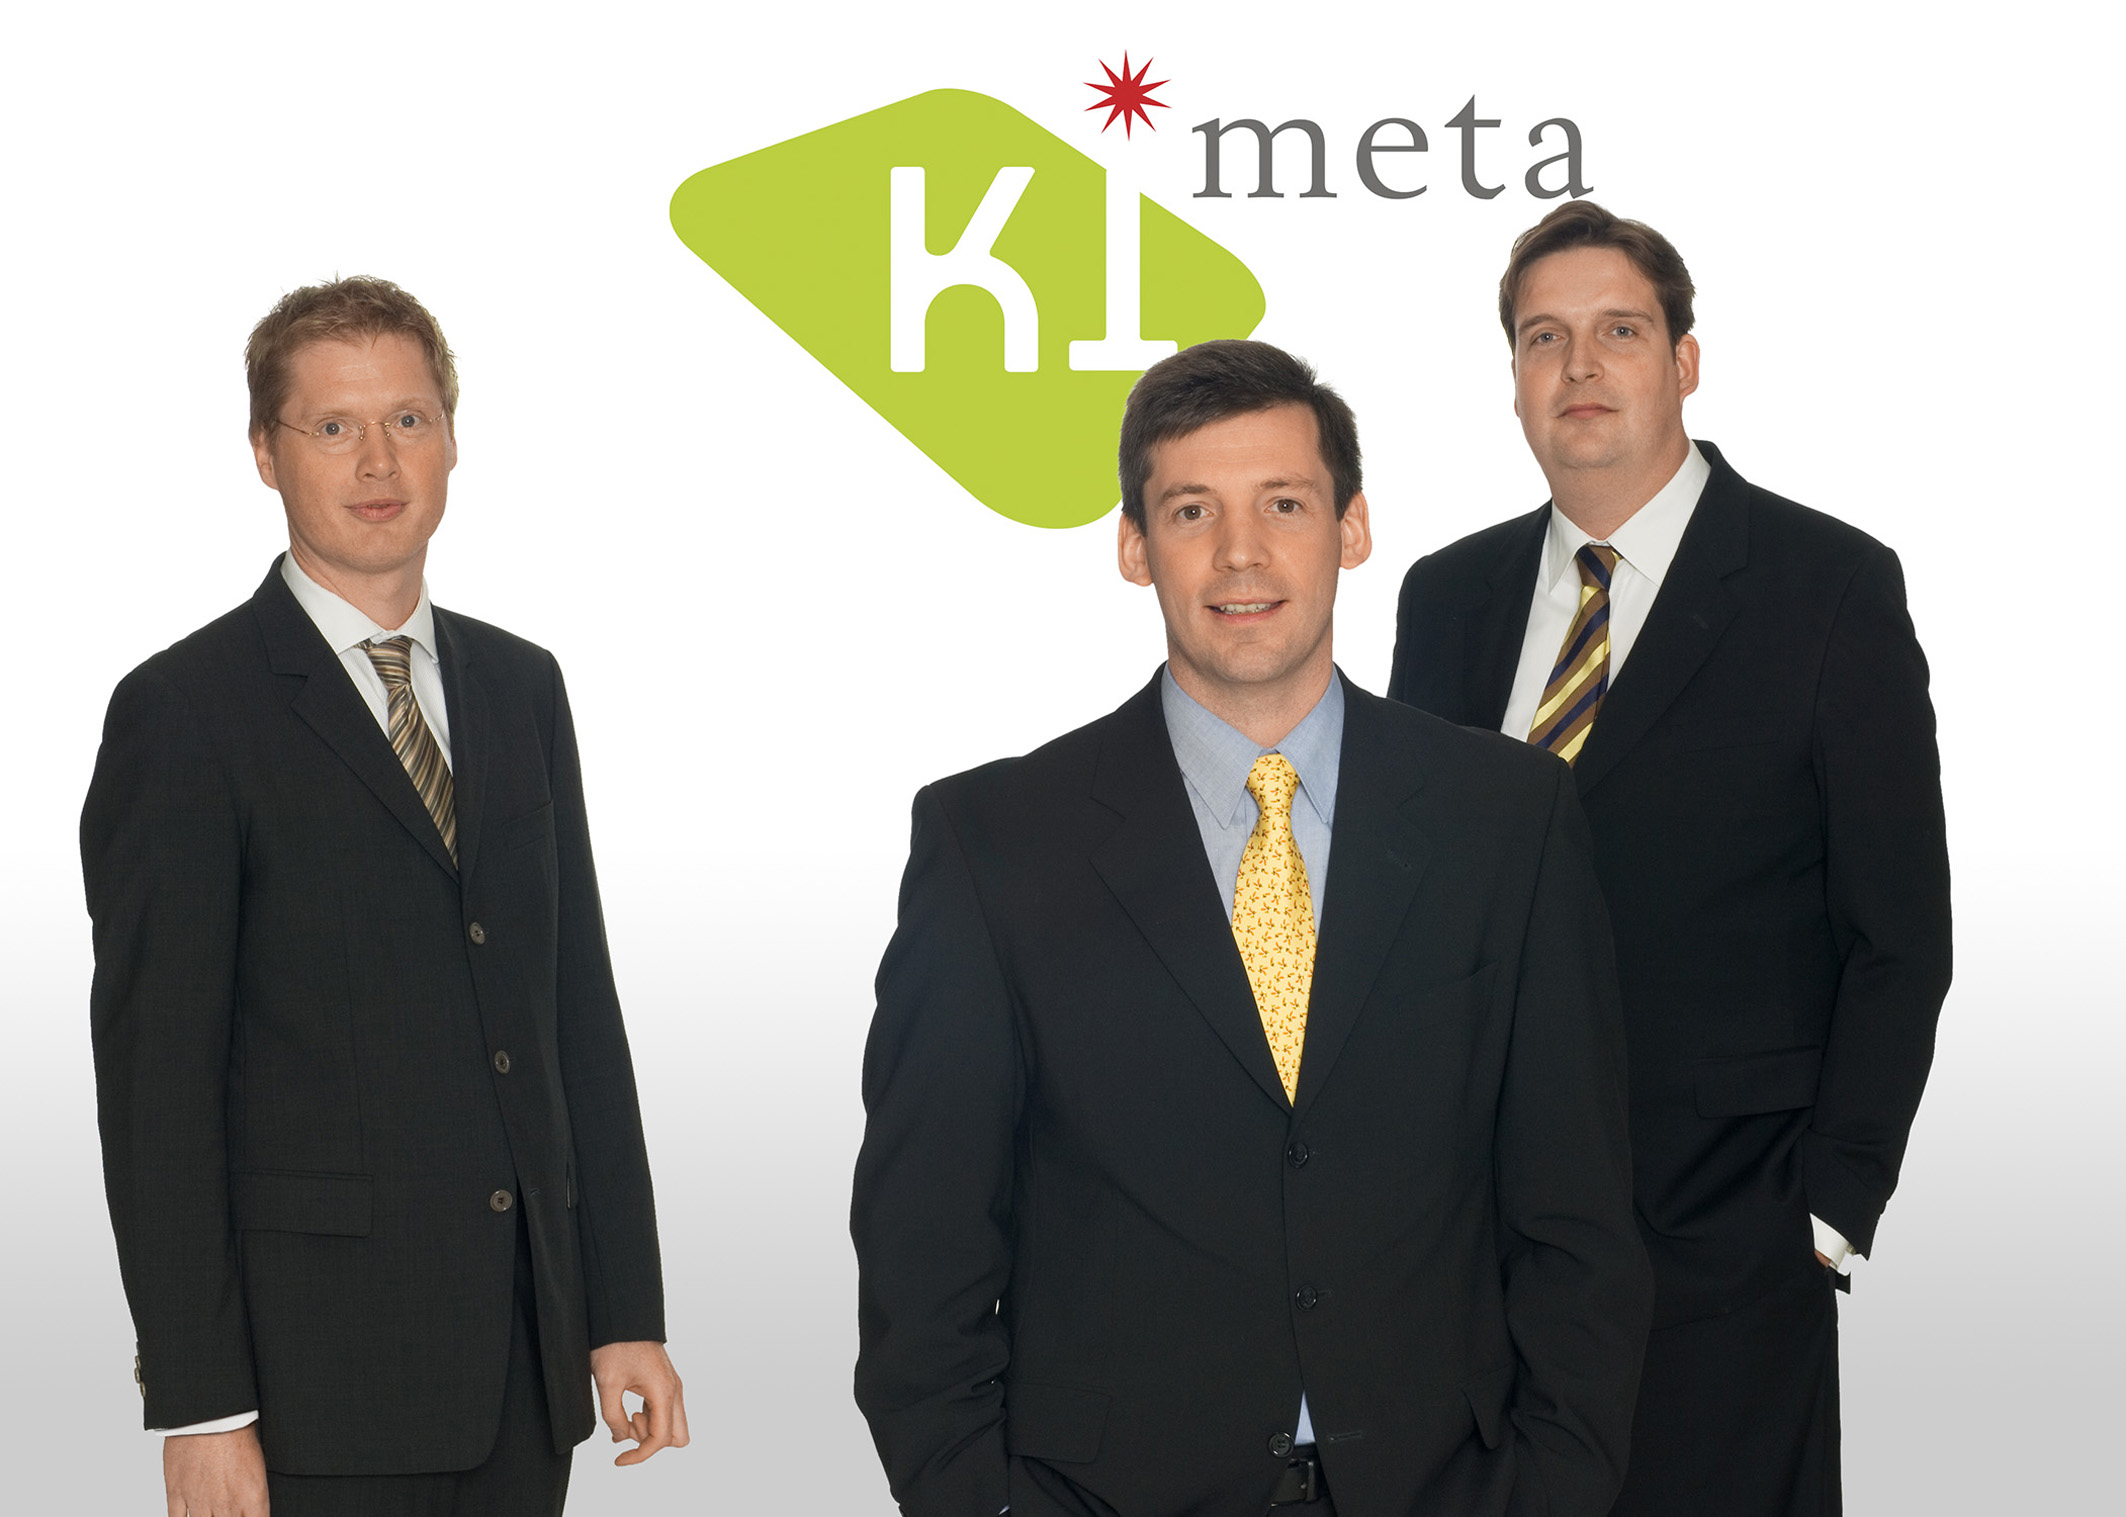 Kimeta-Geschftsfhrung: Jrg Malang, Dr. Erik Spickschen, Jrg Hein (von links)